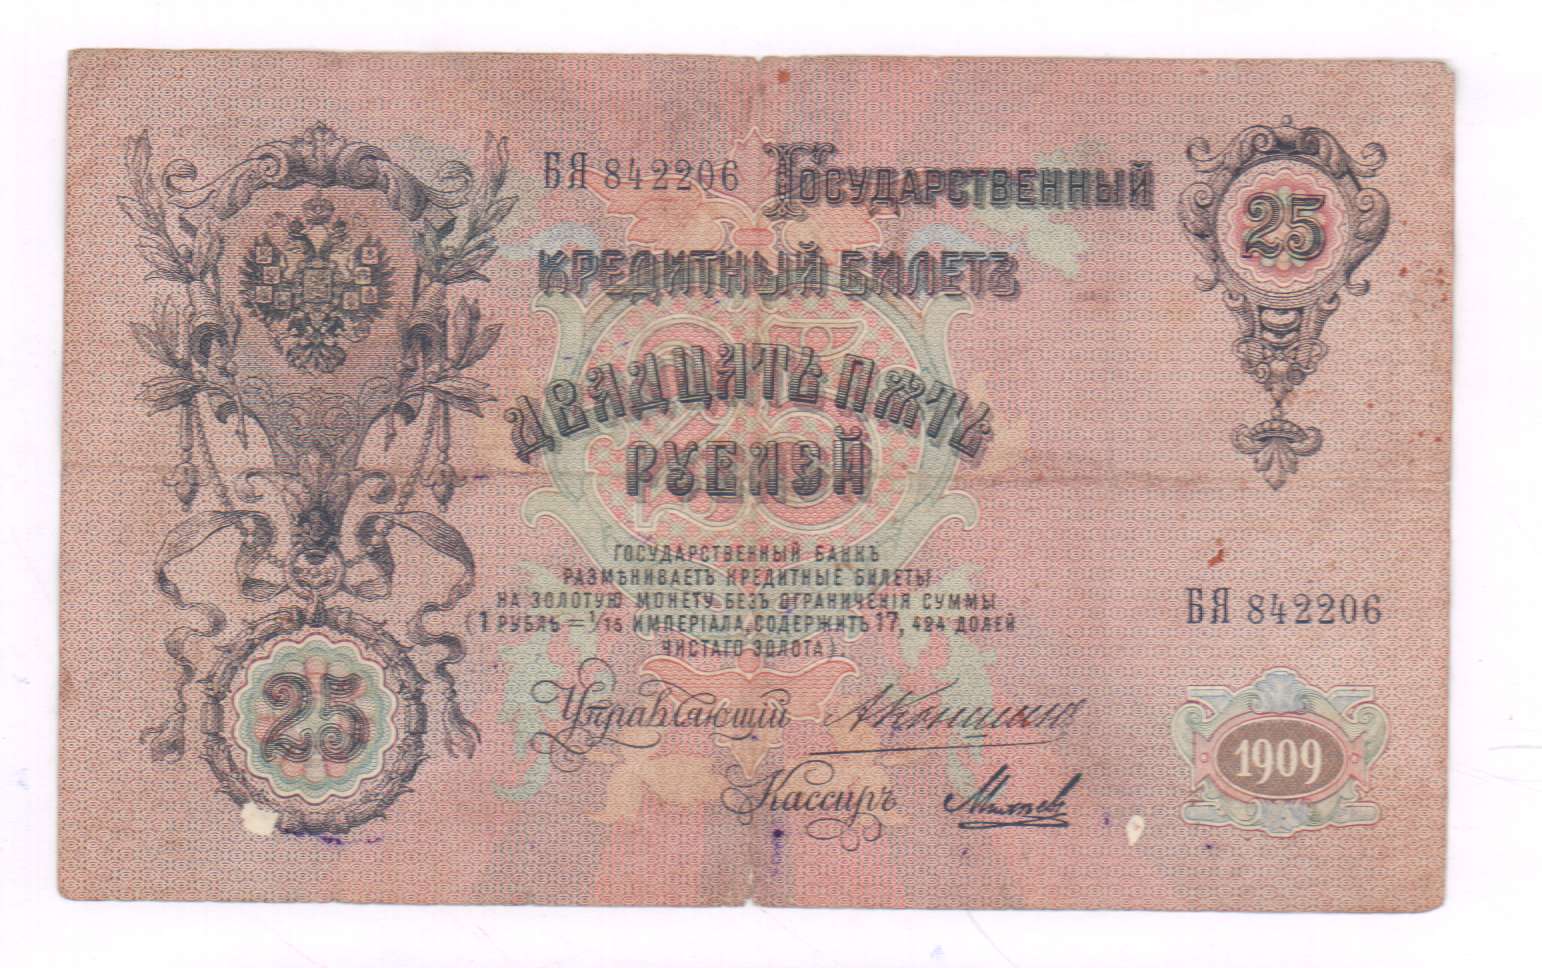 25 рублей 1909 - аверс